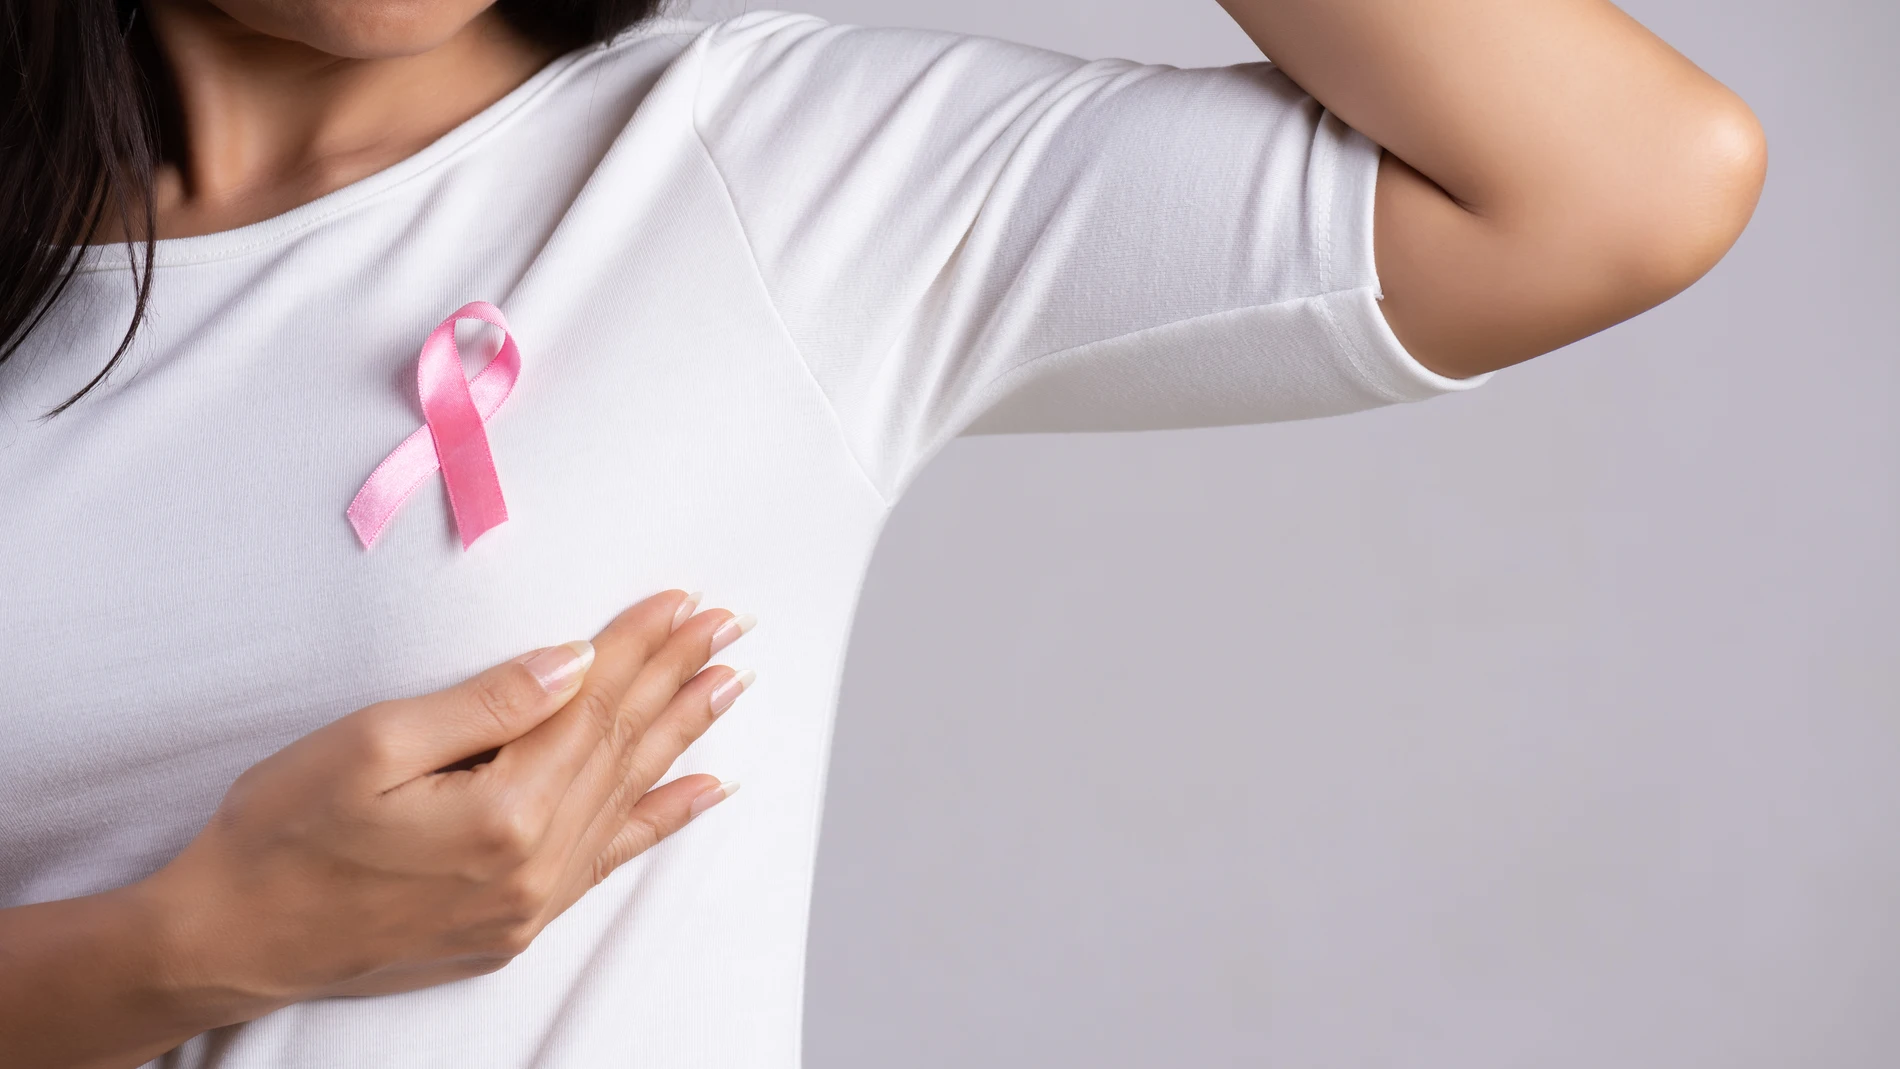 El cáncer de mama, de próstata o de piel son algunos de los más comunes y mortíferos